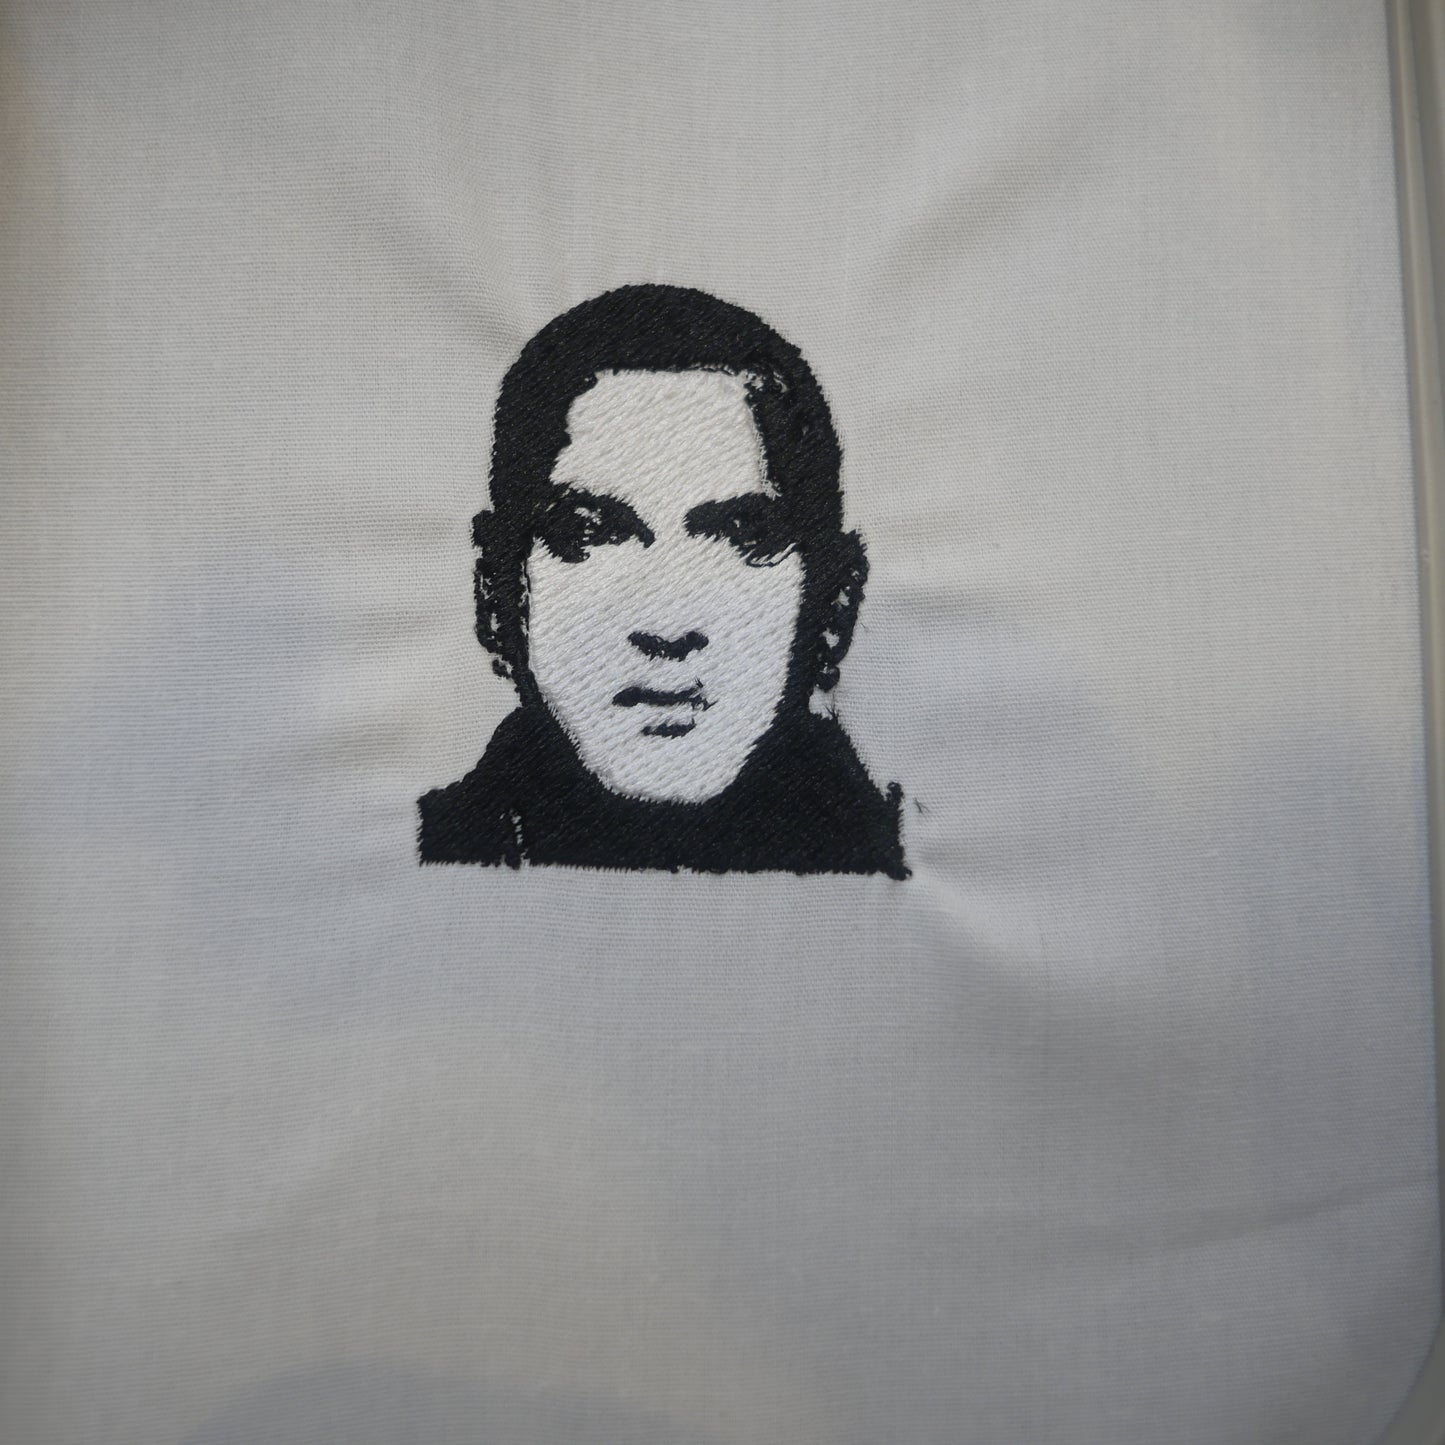 Eminem Embroidery Design